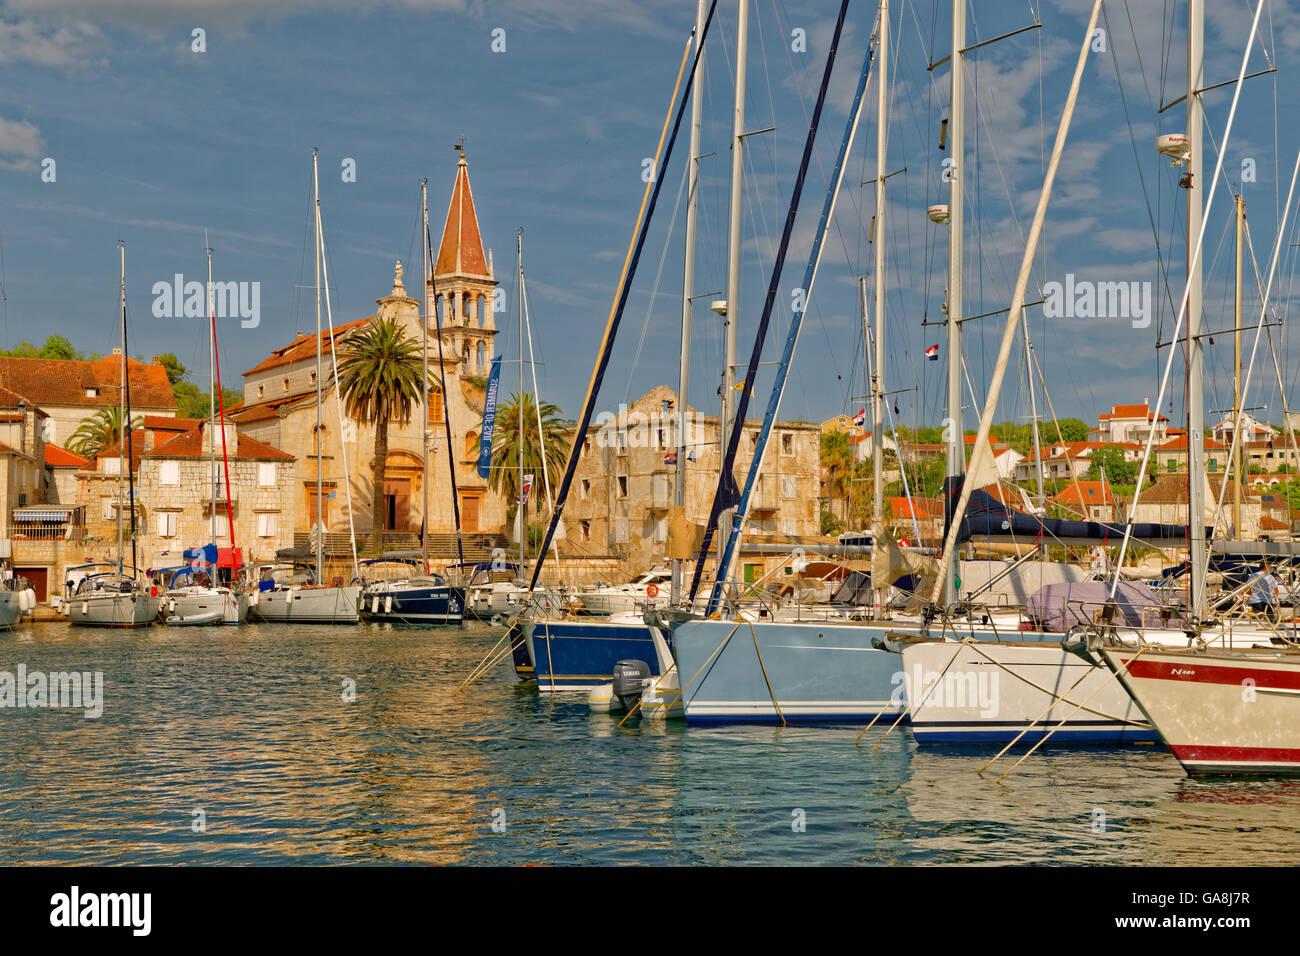 Bateaux de croisière amarrés à ACI marina dans la ville de Milna sur l'île de Brac, Croatie. Banque D'Images